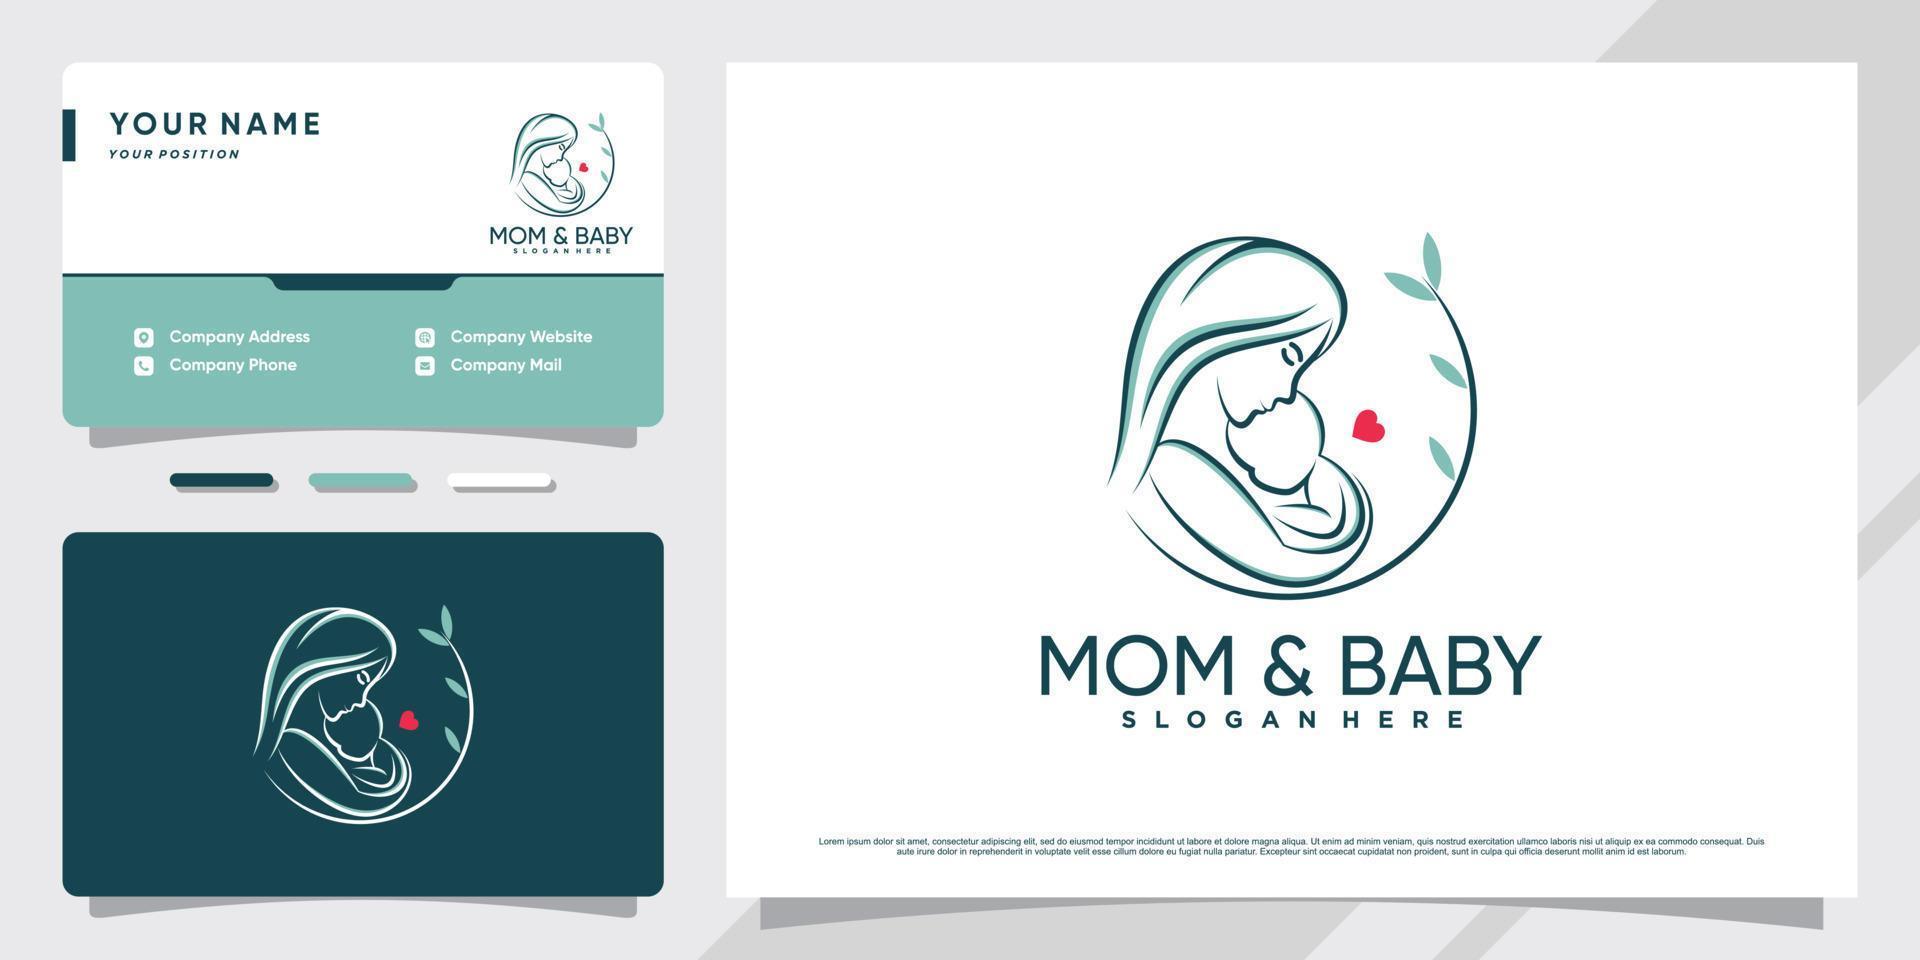 logotipo de mamá y bebé con elemento creativo y diseño de tarjeta de visita vector premium